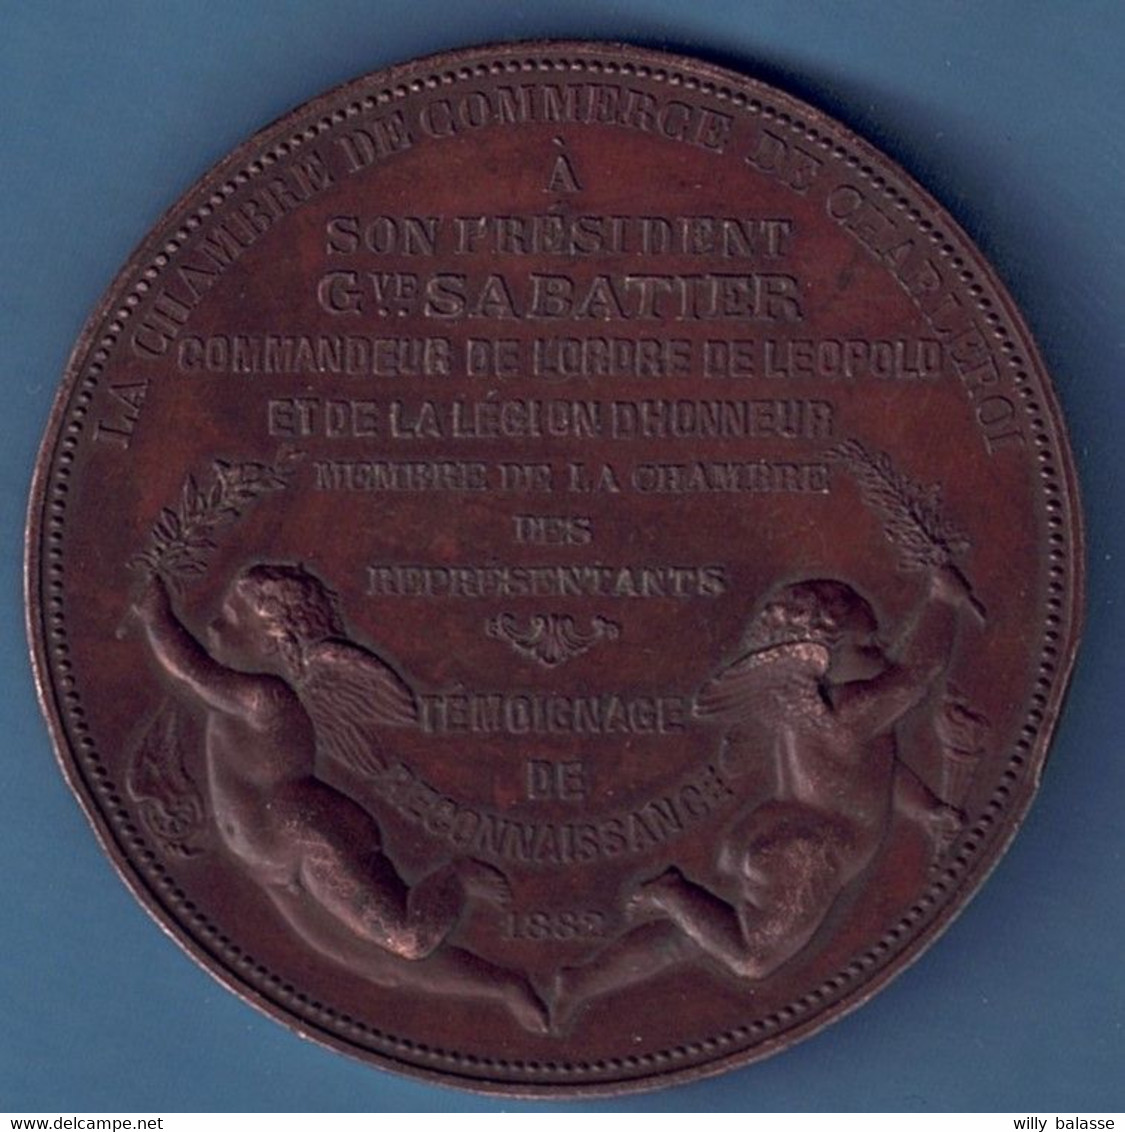 Médaille G Sabatier Chambre Des Représentants Témoignage De Reconnaissance / Légion D'honneur ... 1882 / Charles Wiener - Professionnels / De Société